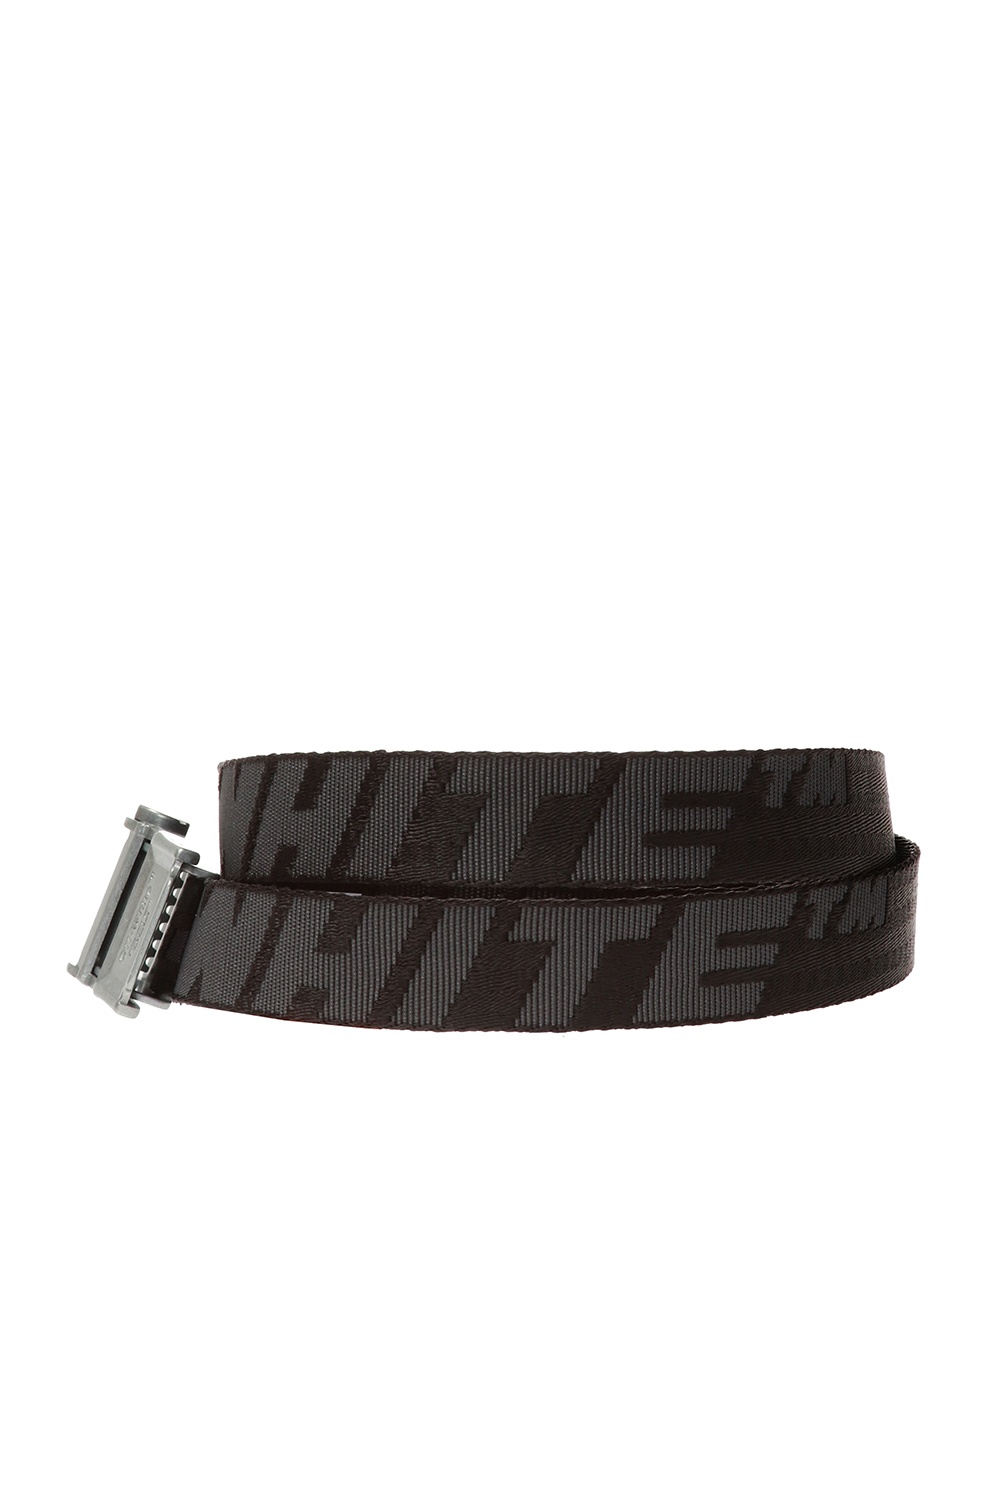 Off-White Patterned belt